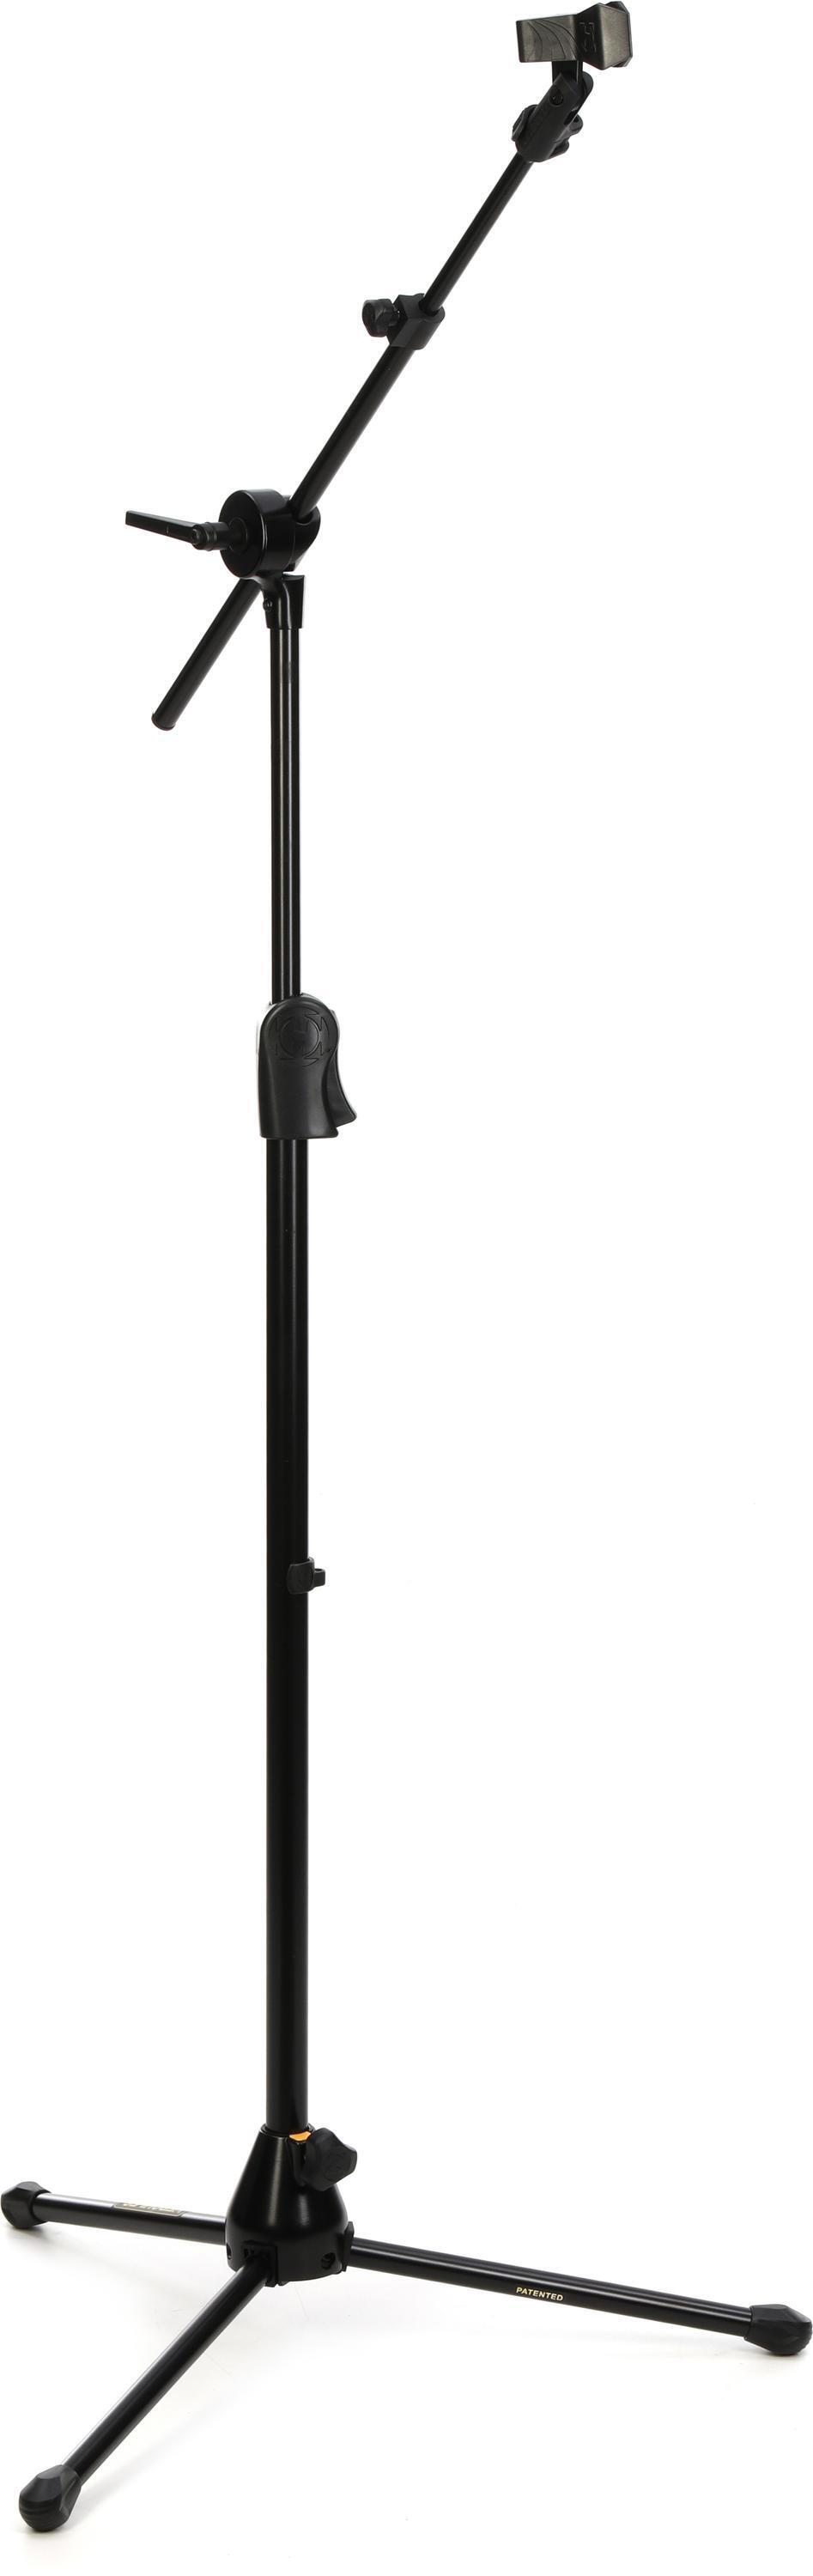 Bundled Item: Hercules Stands MS523BPRO EZ Clutch Tripod Microphone Stand